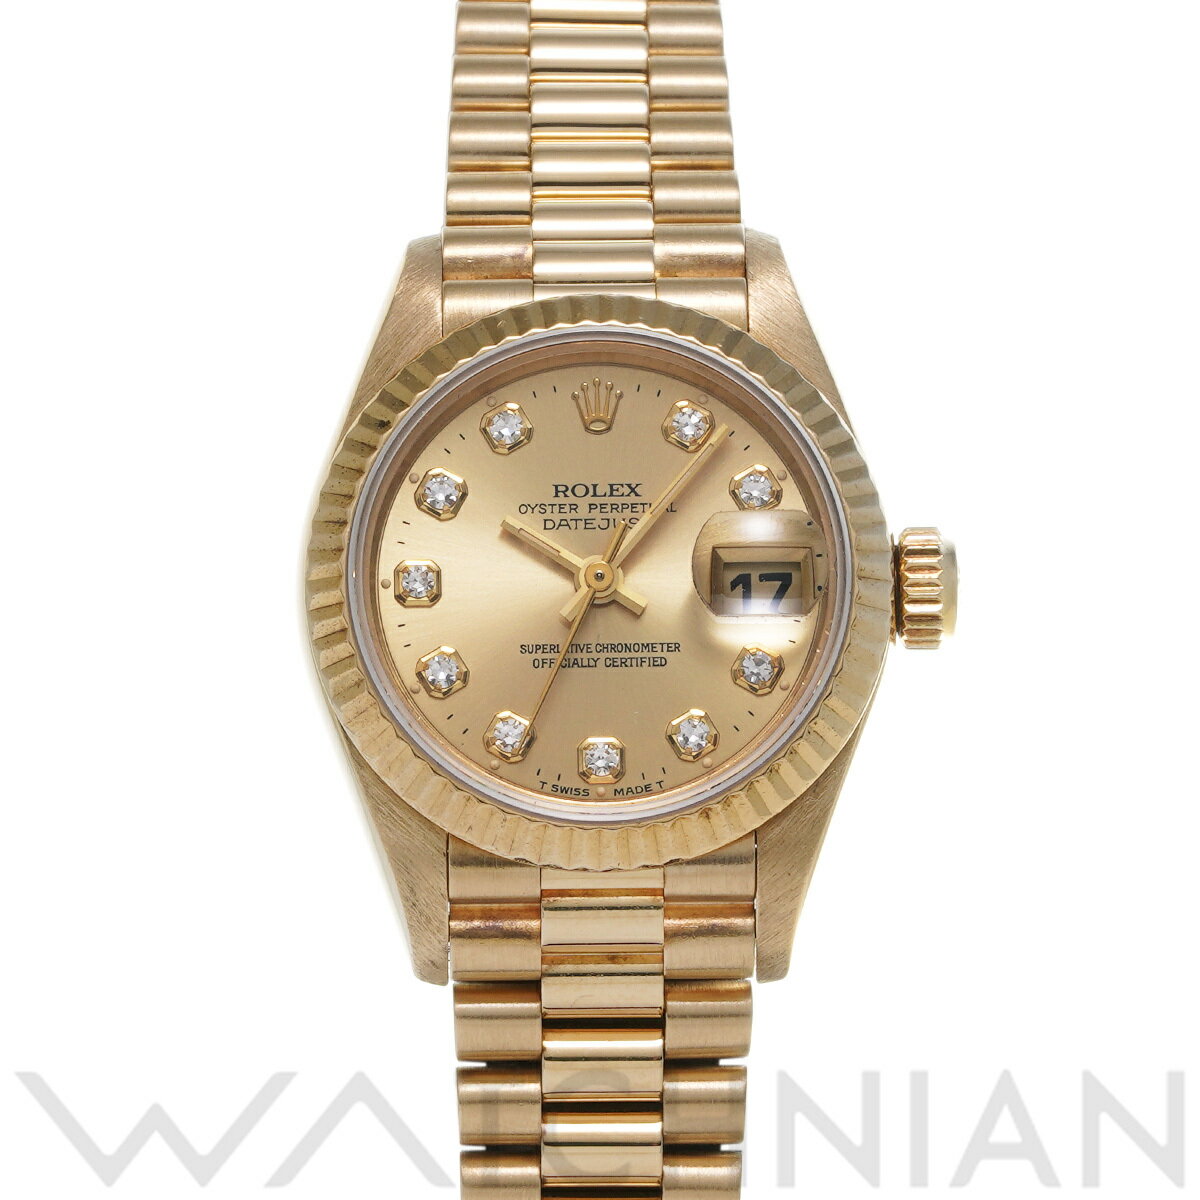 【ローン60回払い無金利】【中古】 ロレックス ROLEX デイトジャスト 69178G W番(1994年頃製造) シャンパン/ダイヤモンド レディース 腕時計 ロレックス 時計 高級腕時計 ブランド